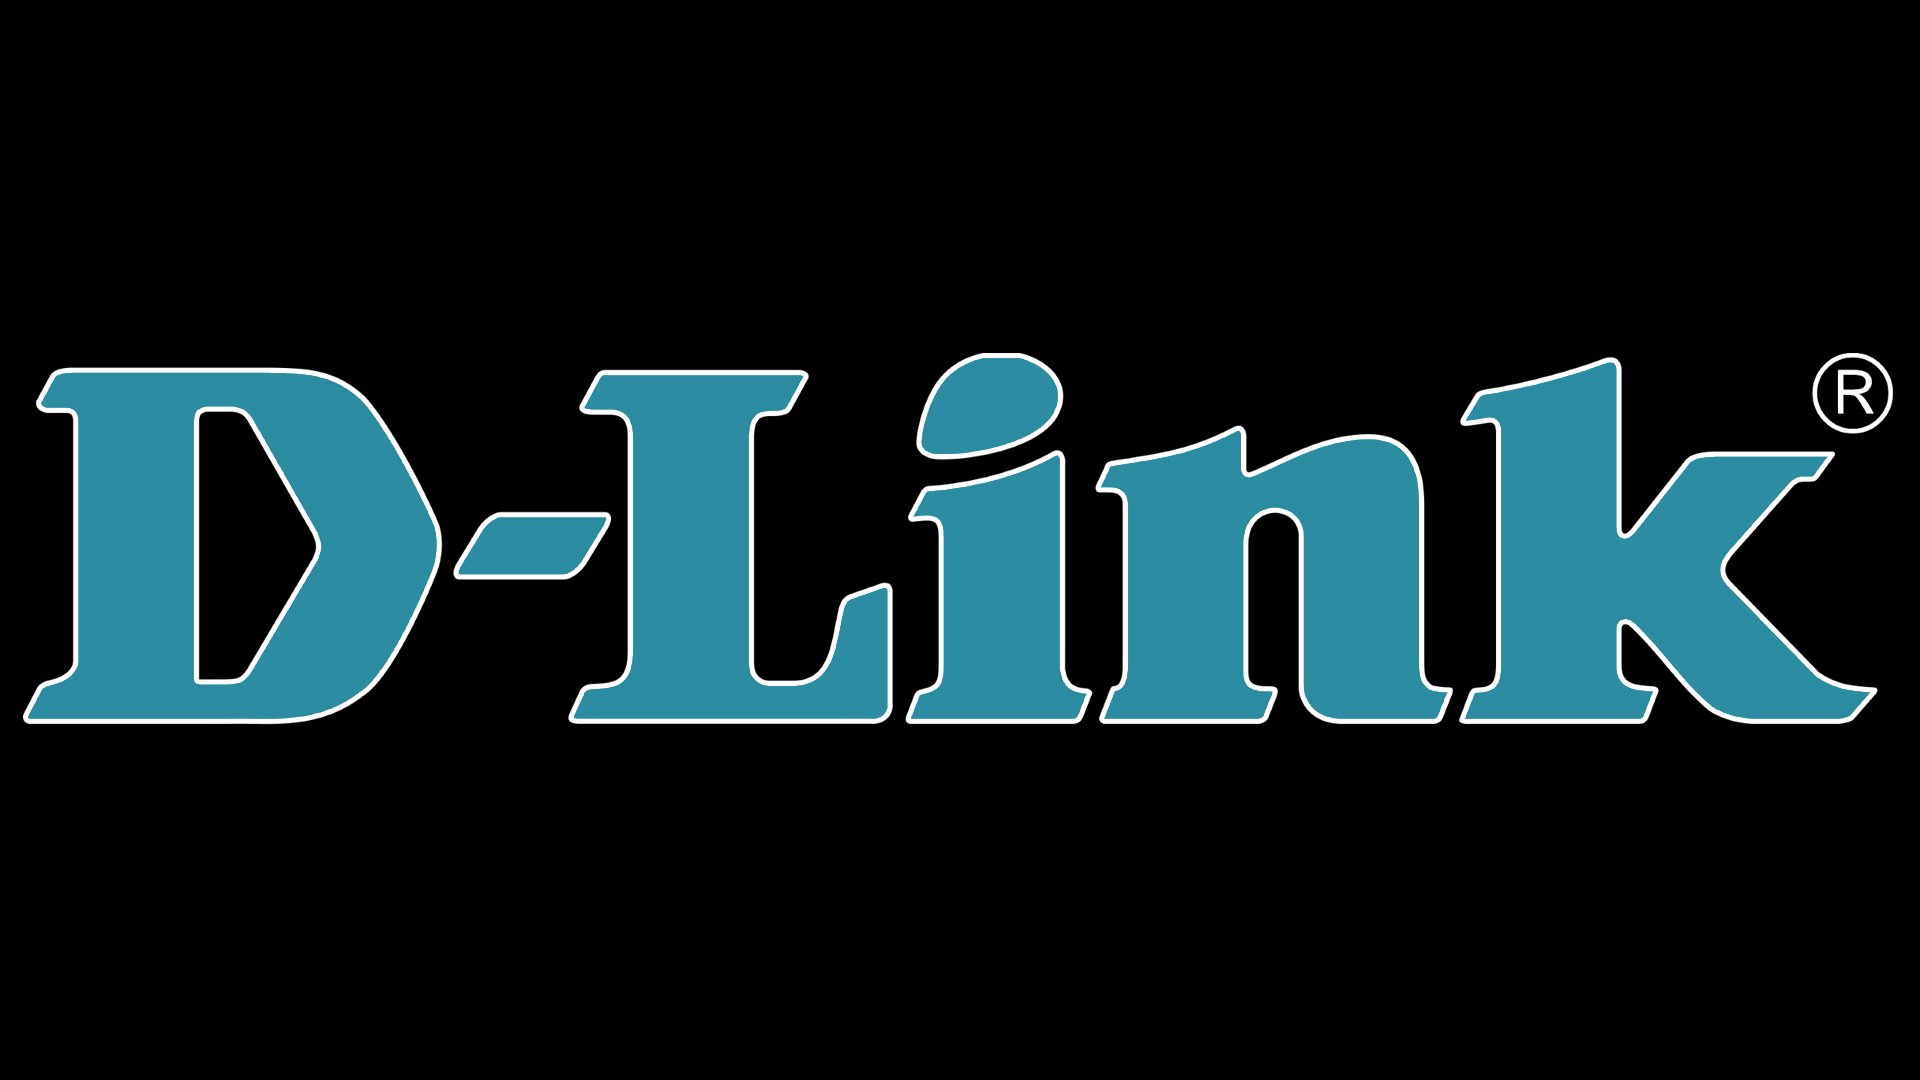 Link Logo PNG Vectors Free Download